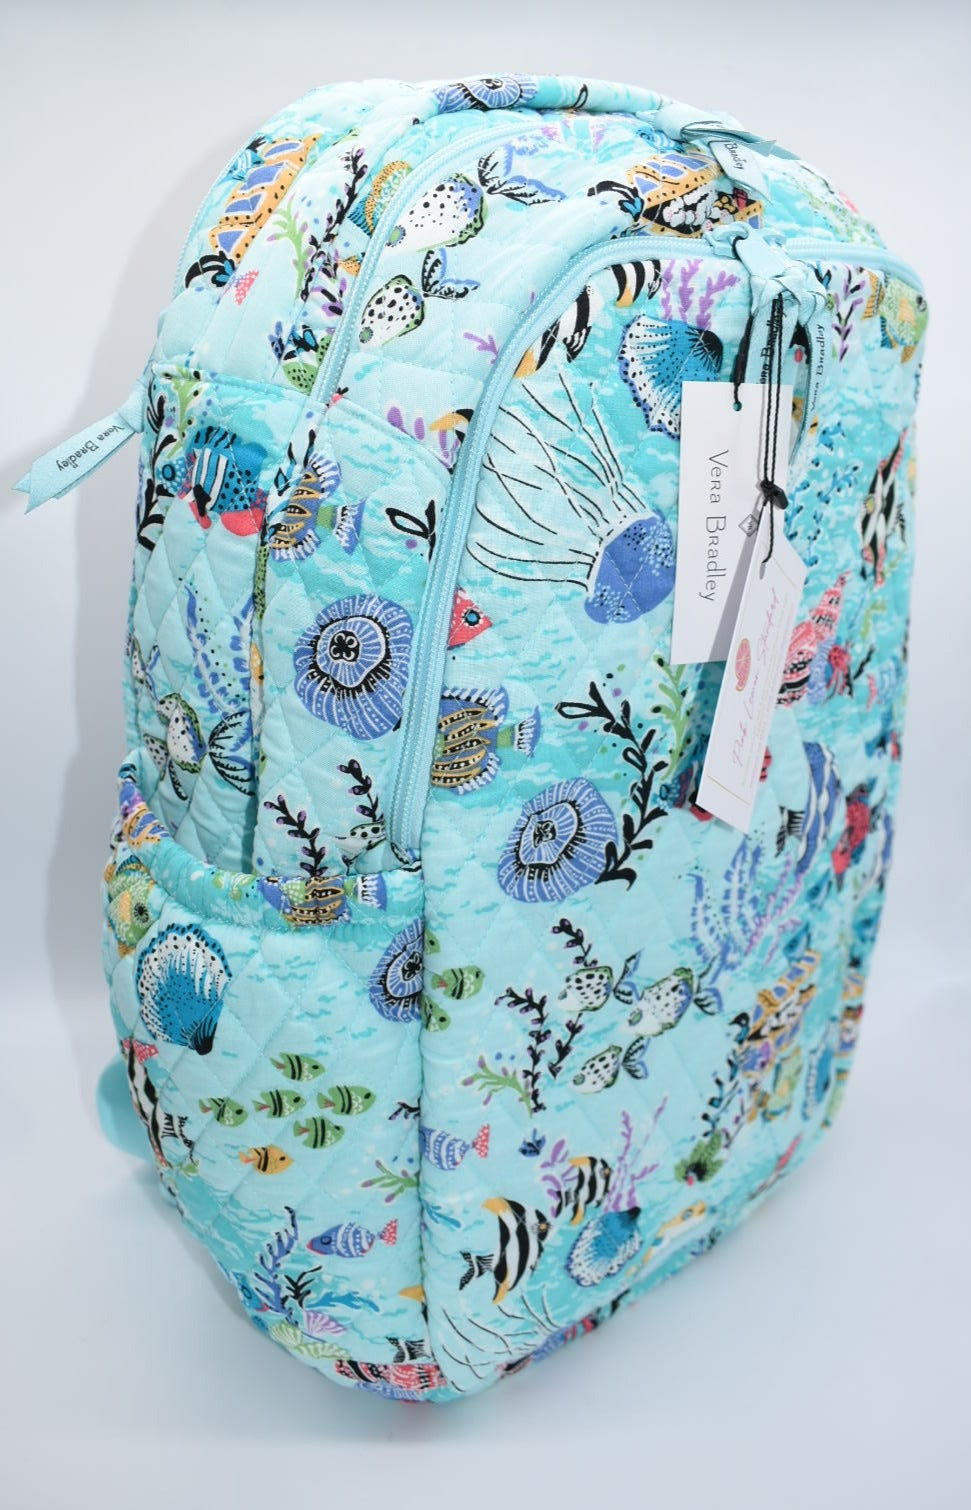 Vera Bradley Travel Backpack in "Antilles Treasure" Pattern